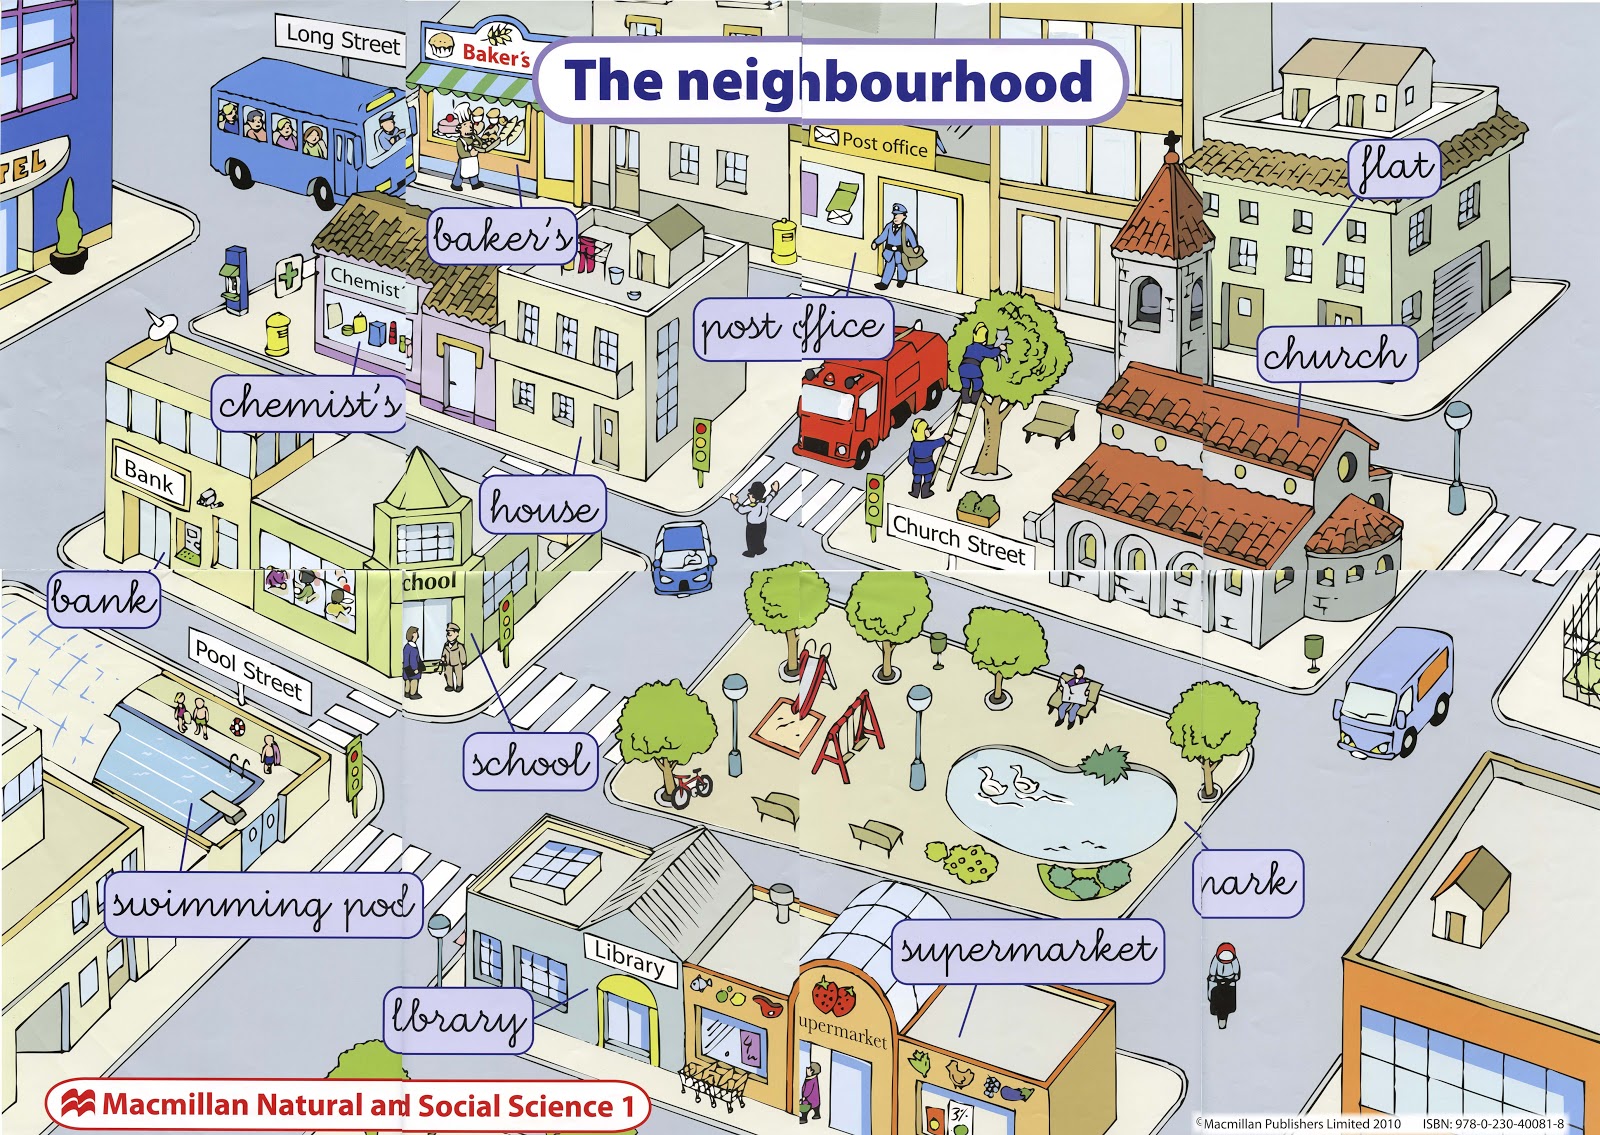 Назови улицу и дом. Описание города. Изображение города для детей. Карта города для изучения английского. Картинка города для описания.